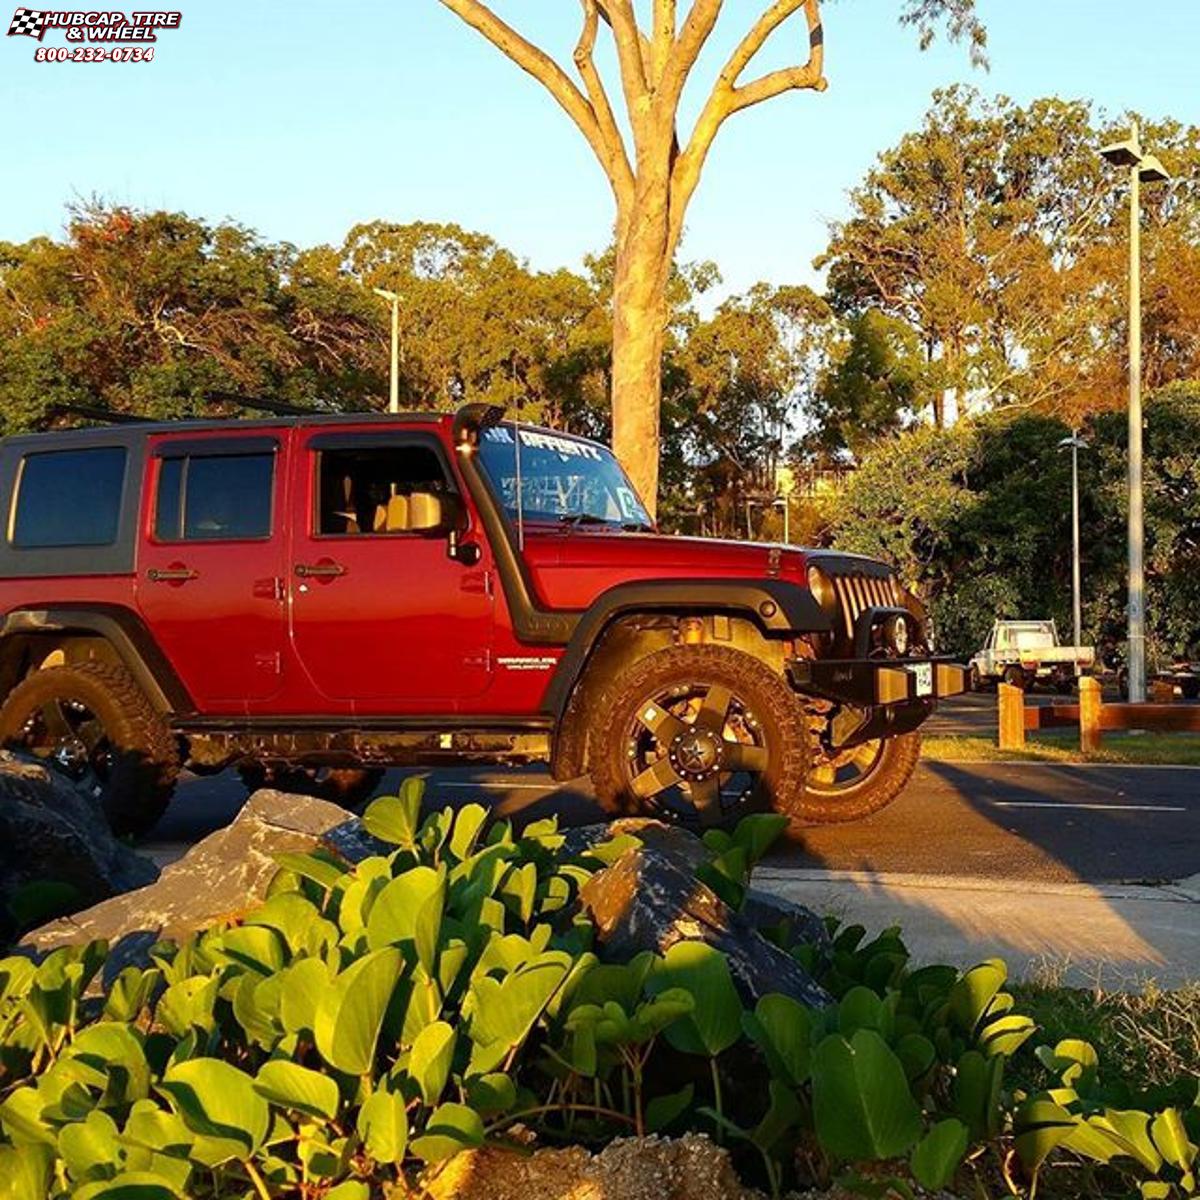  Jeep Wrangler